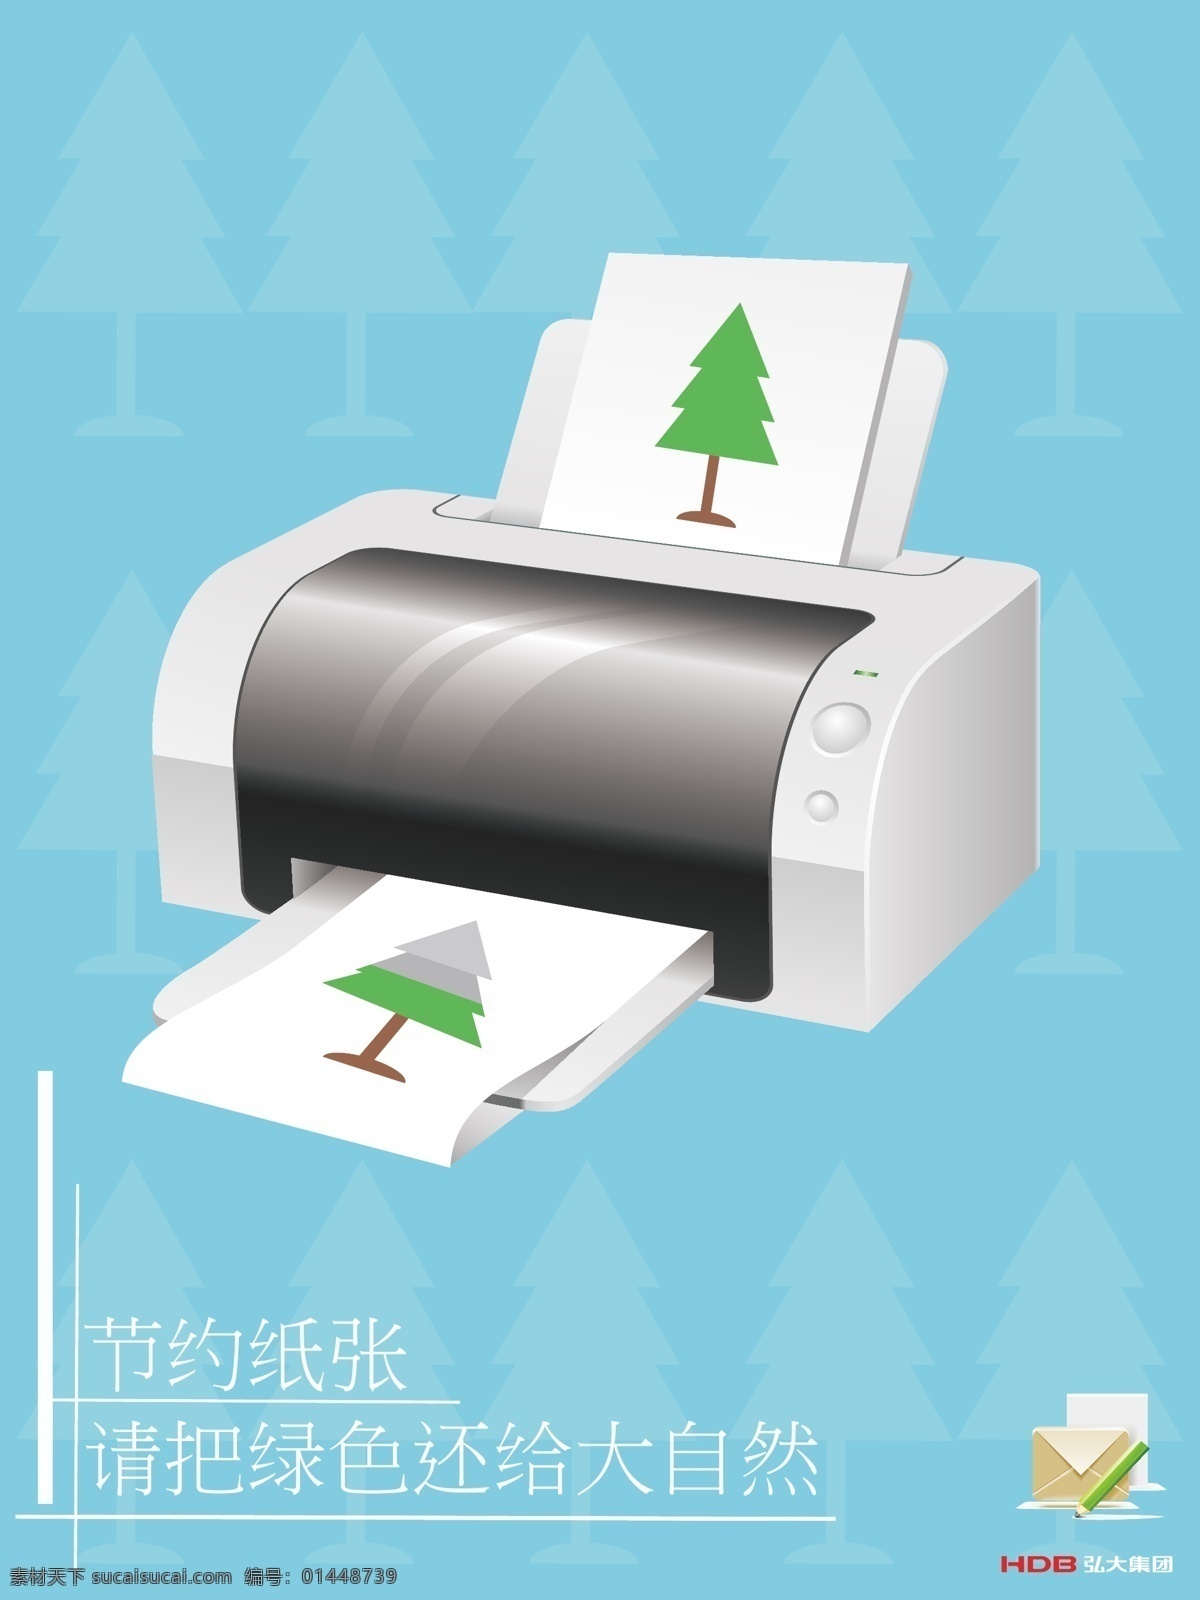 标识标志图标 公共标识标志 环境保护 节约 节约用纸 绿色 树木 用纸 矢量 模板下载 节约打印用纸 节碳环保 环保公益海报